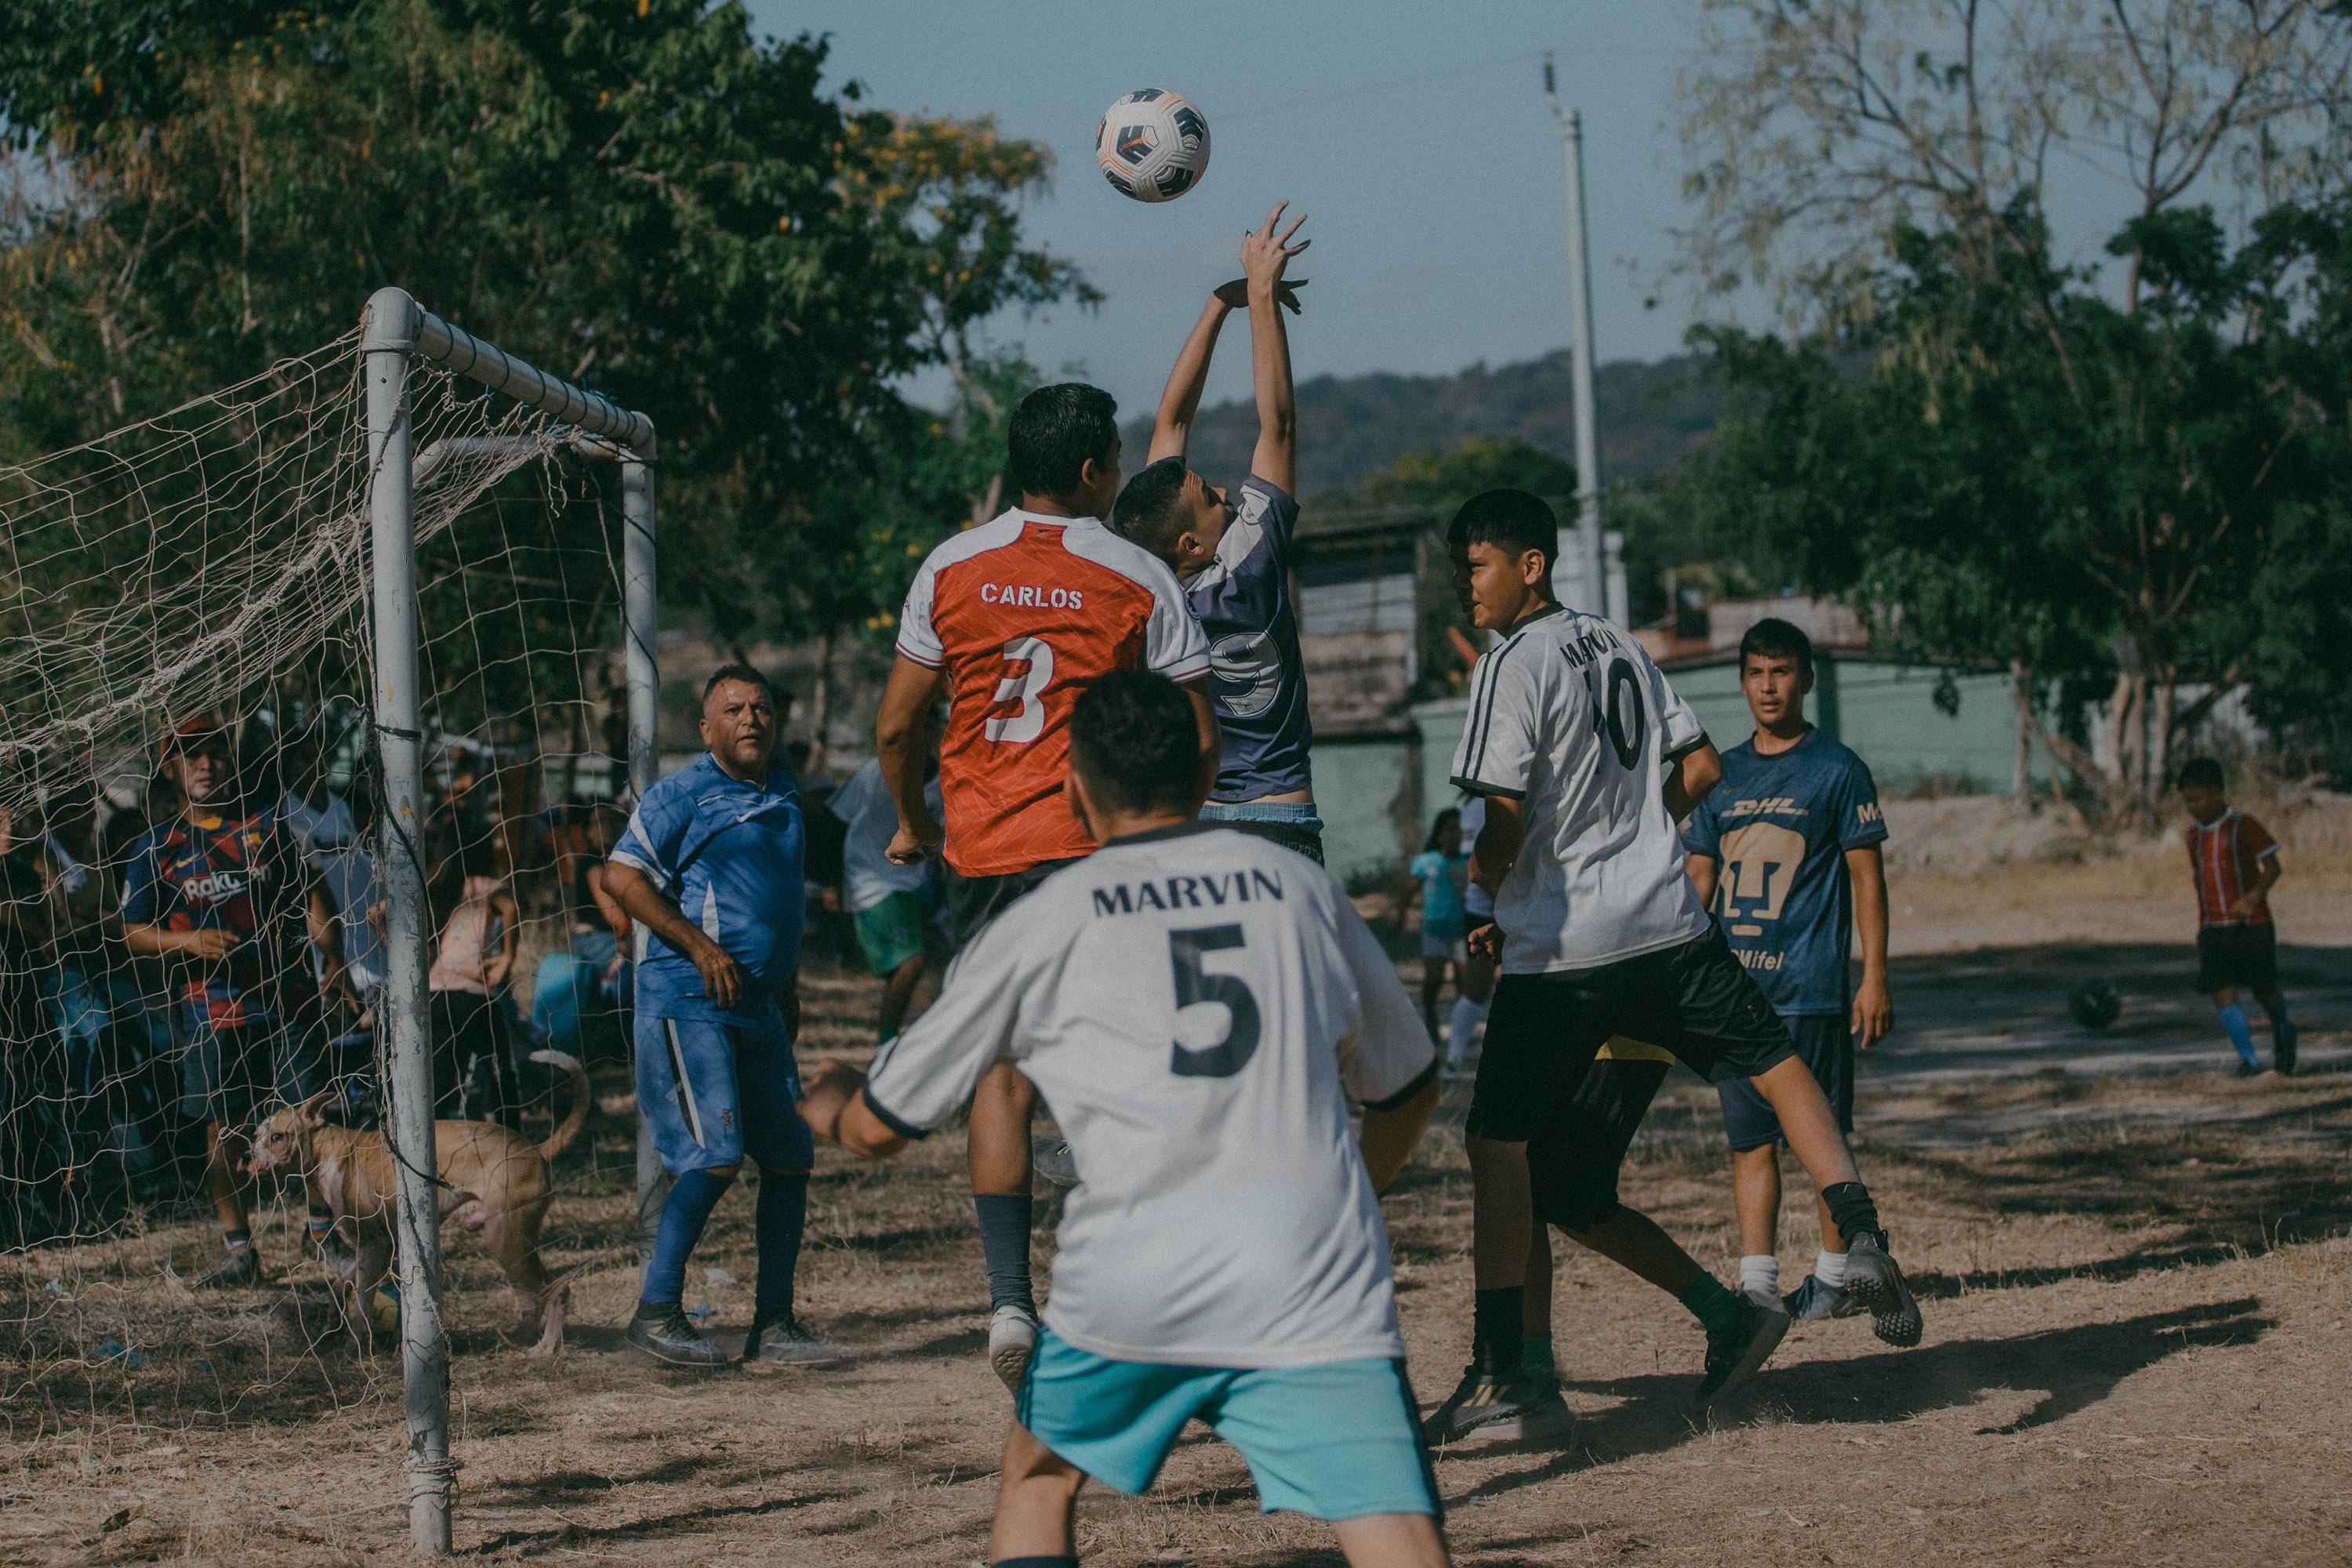 Vecinos de Las Cañas juegan un encuentro amistoso en una jornada de fútbol que los organizadores bautizaron como 